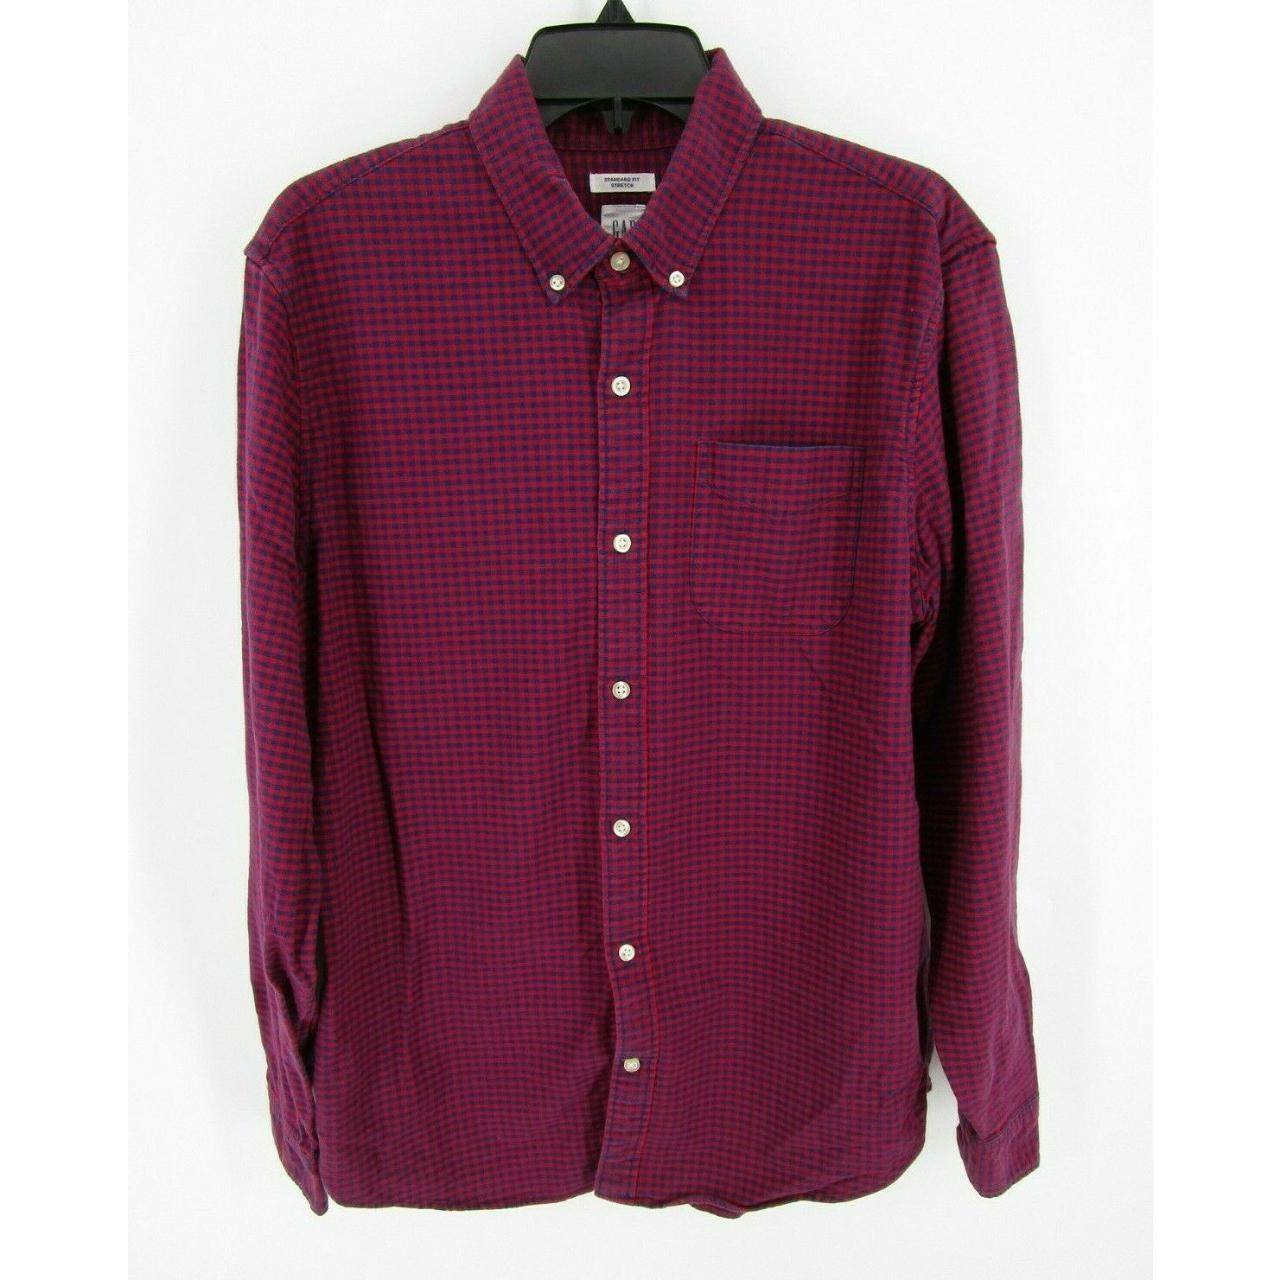 GAP Button Down Shirt Men Medium Red Plaid Standard... - Depop